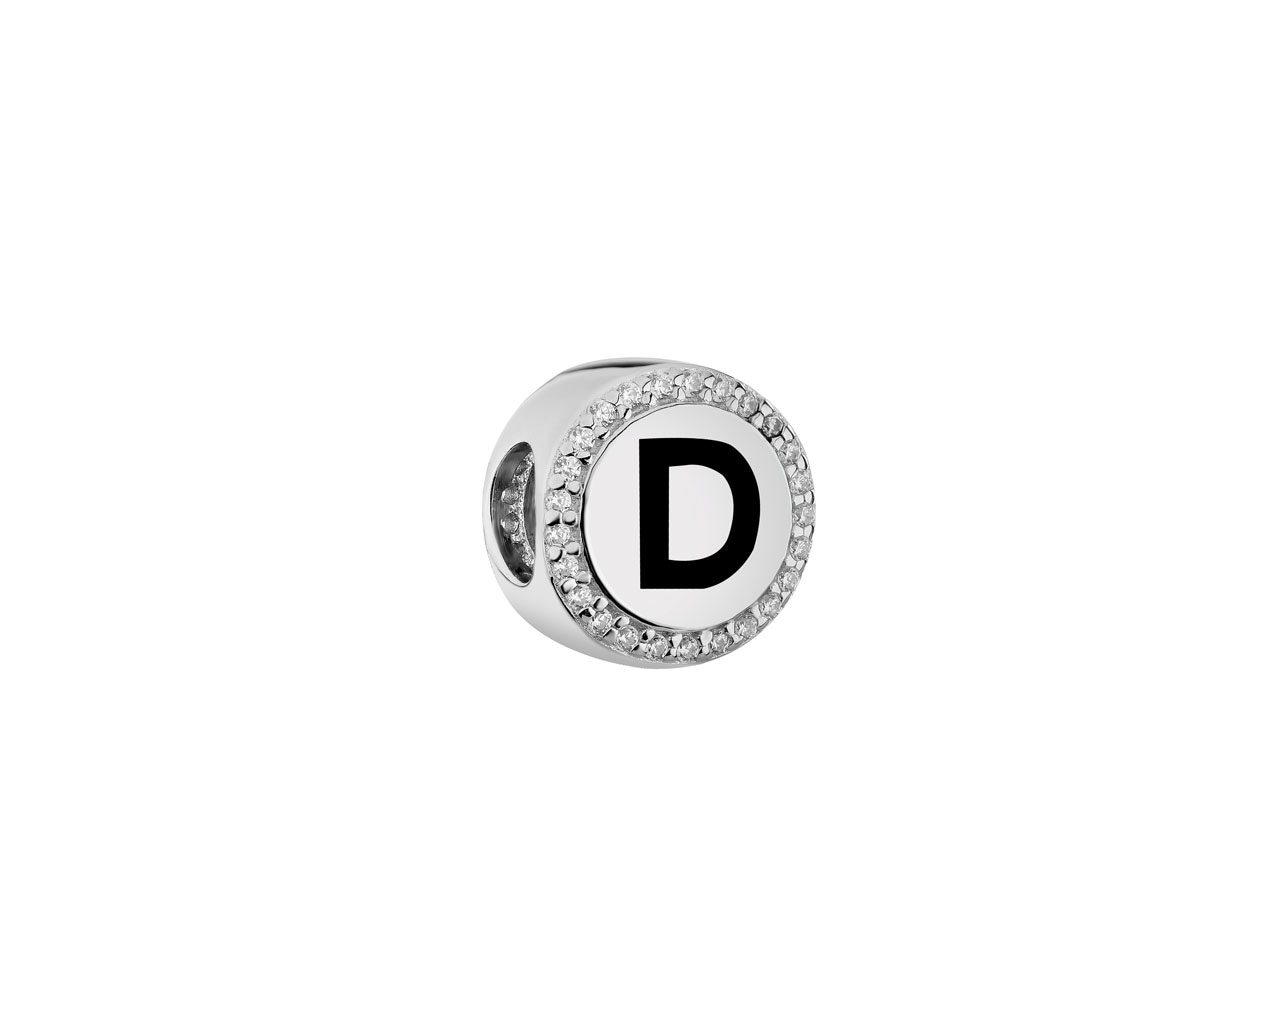 Zawieszka srebrna beads - litera D